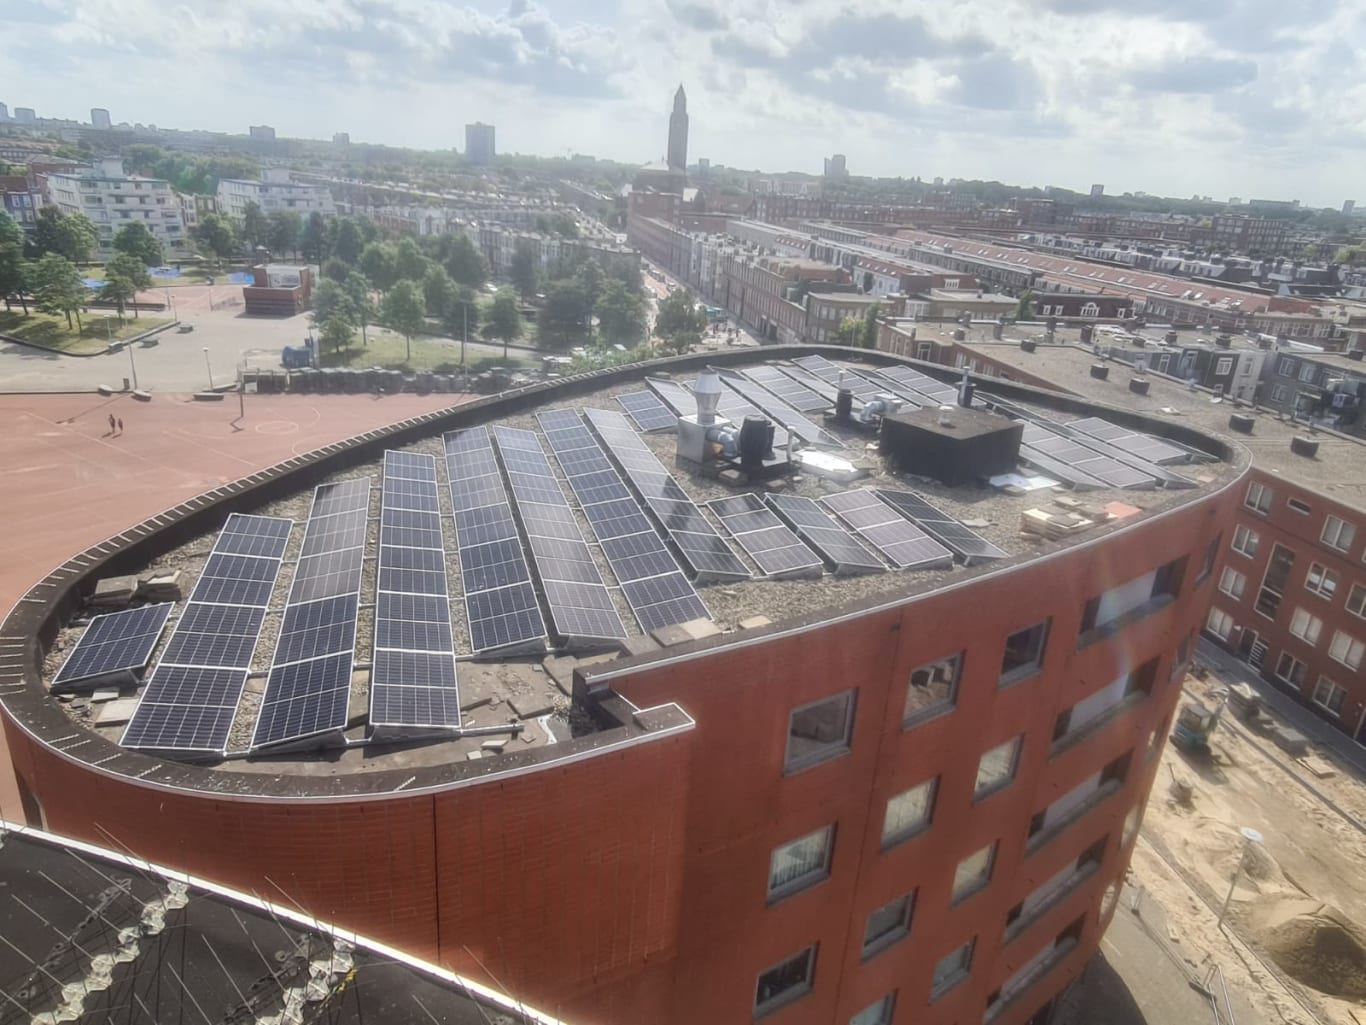 Foto van dak VvE gebouw met zonnepanelen er op